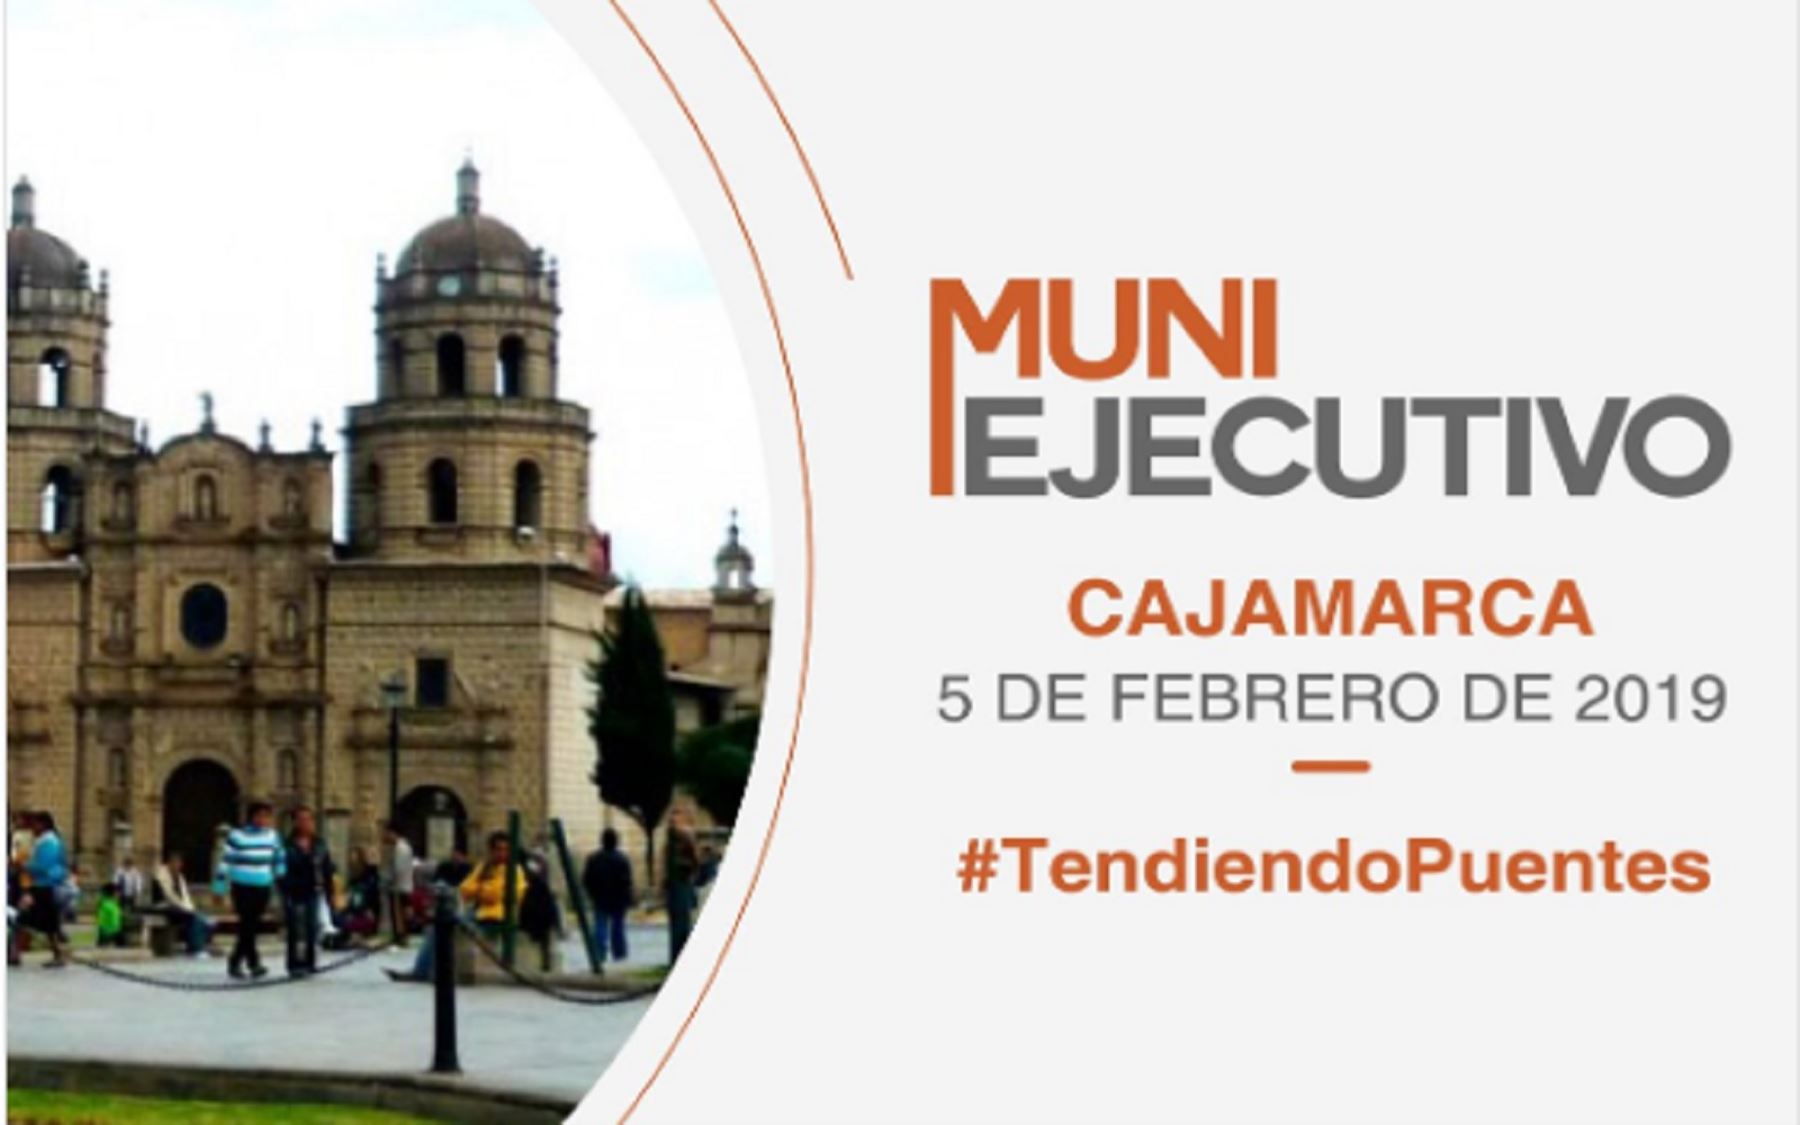 Muni Ejecutivo Cajamarca